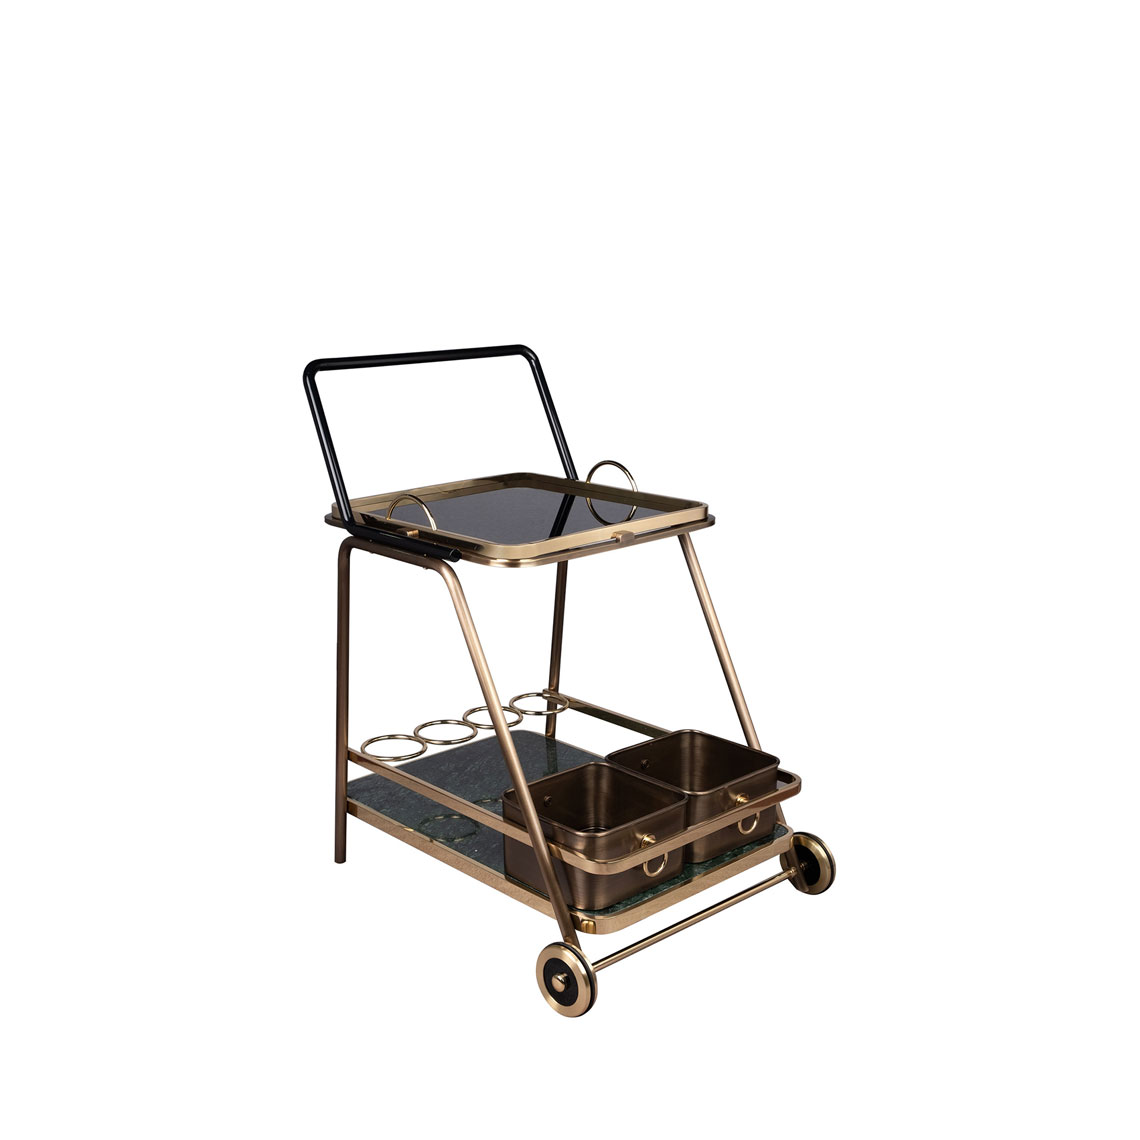 Decatur Bar Cart